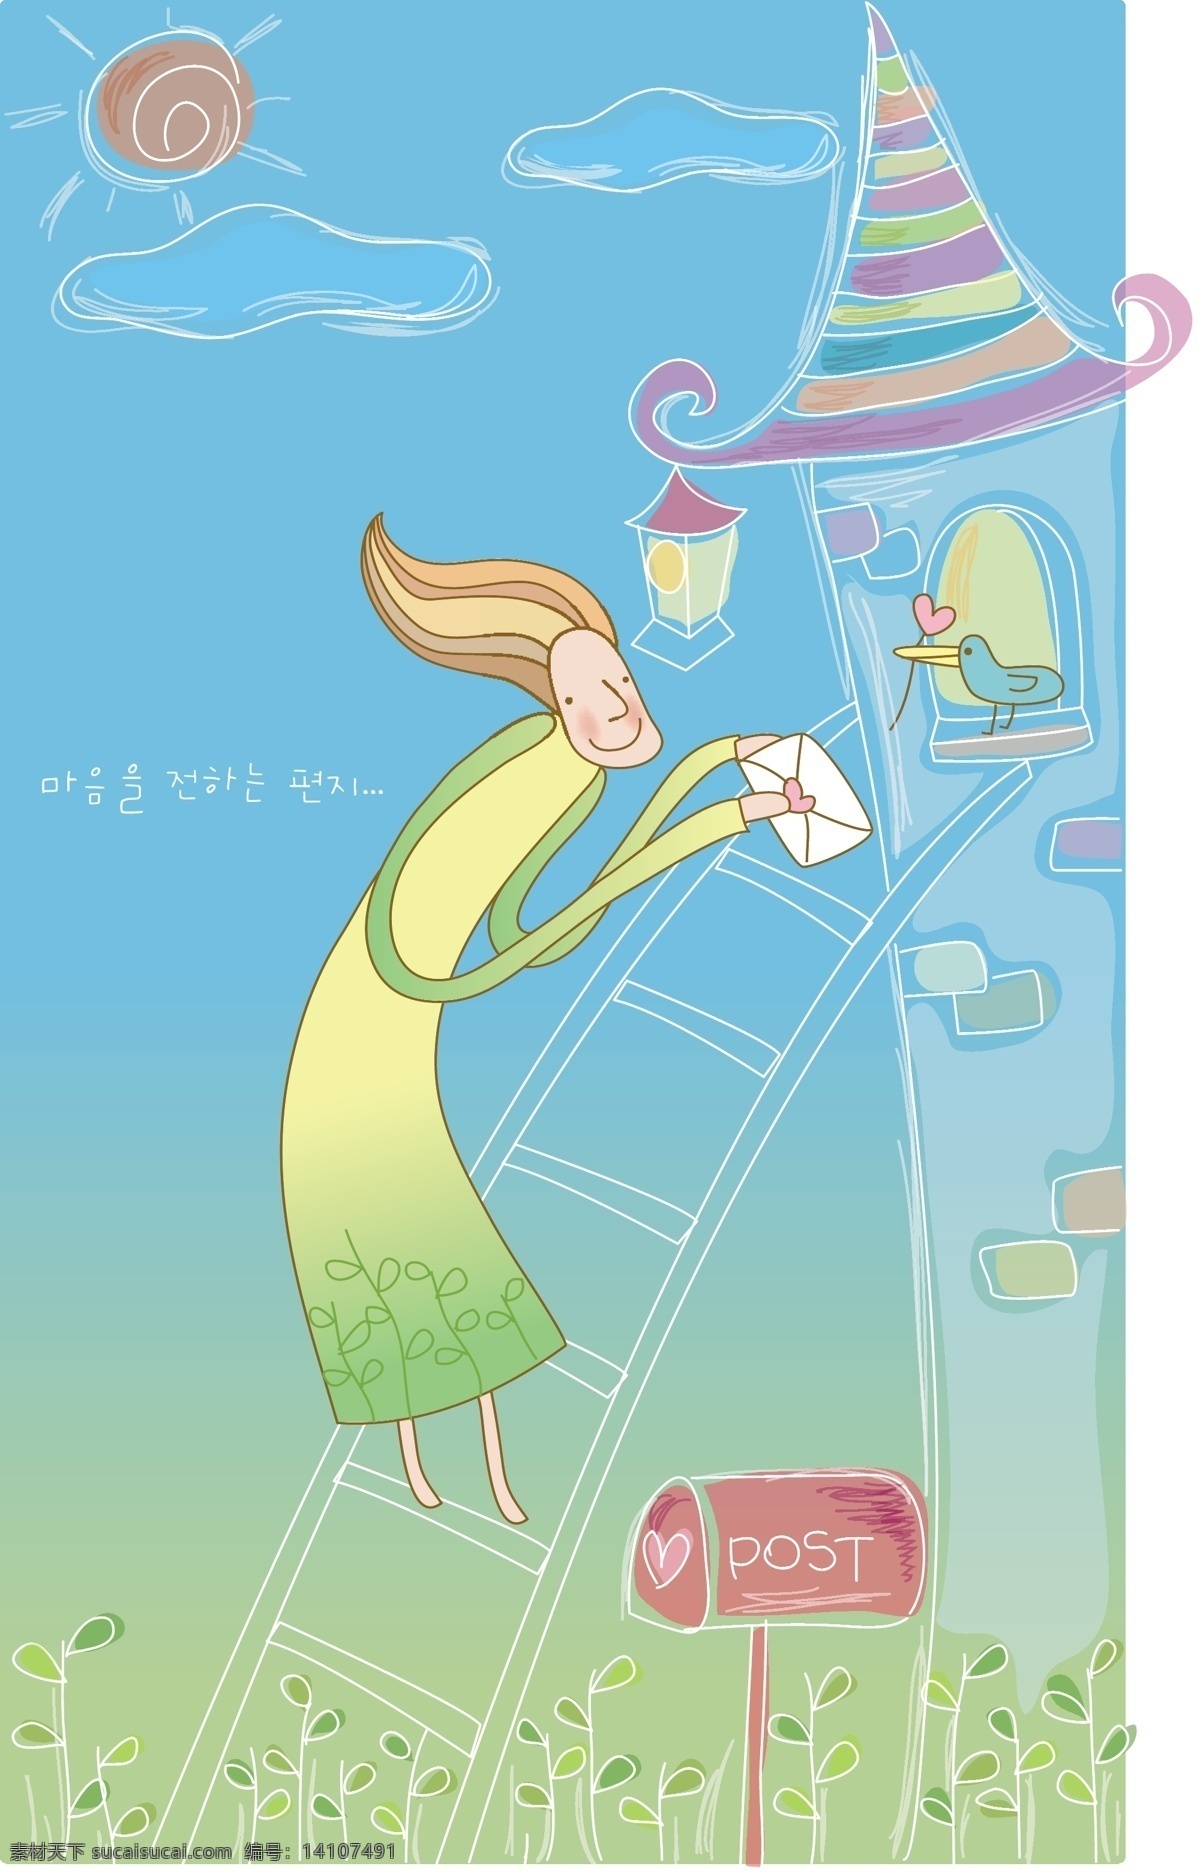 矢量 源文件 韩国 卡通 情侣 童话 素材eps 矢量图 矢量人物